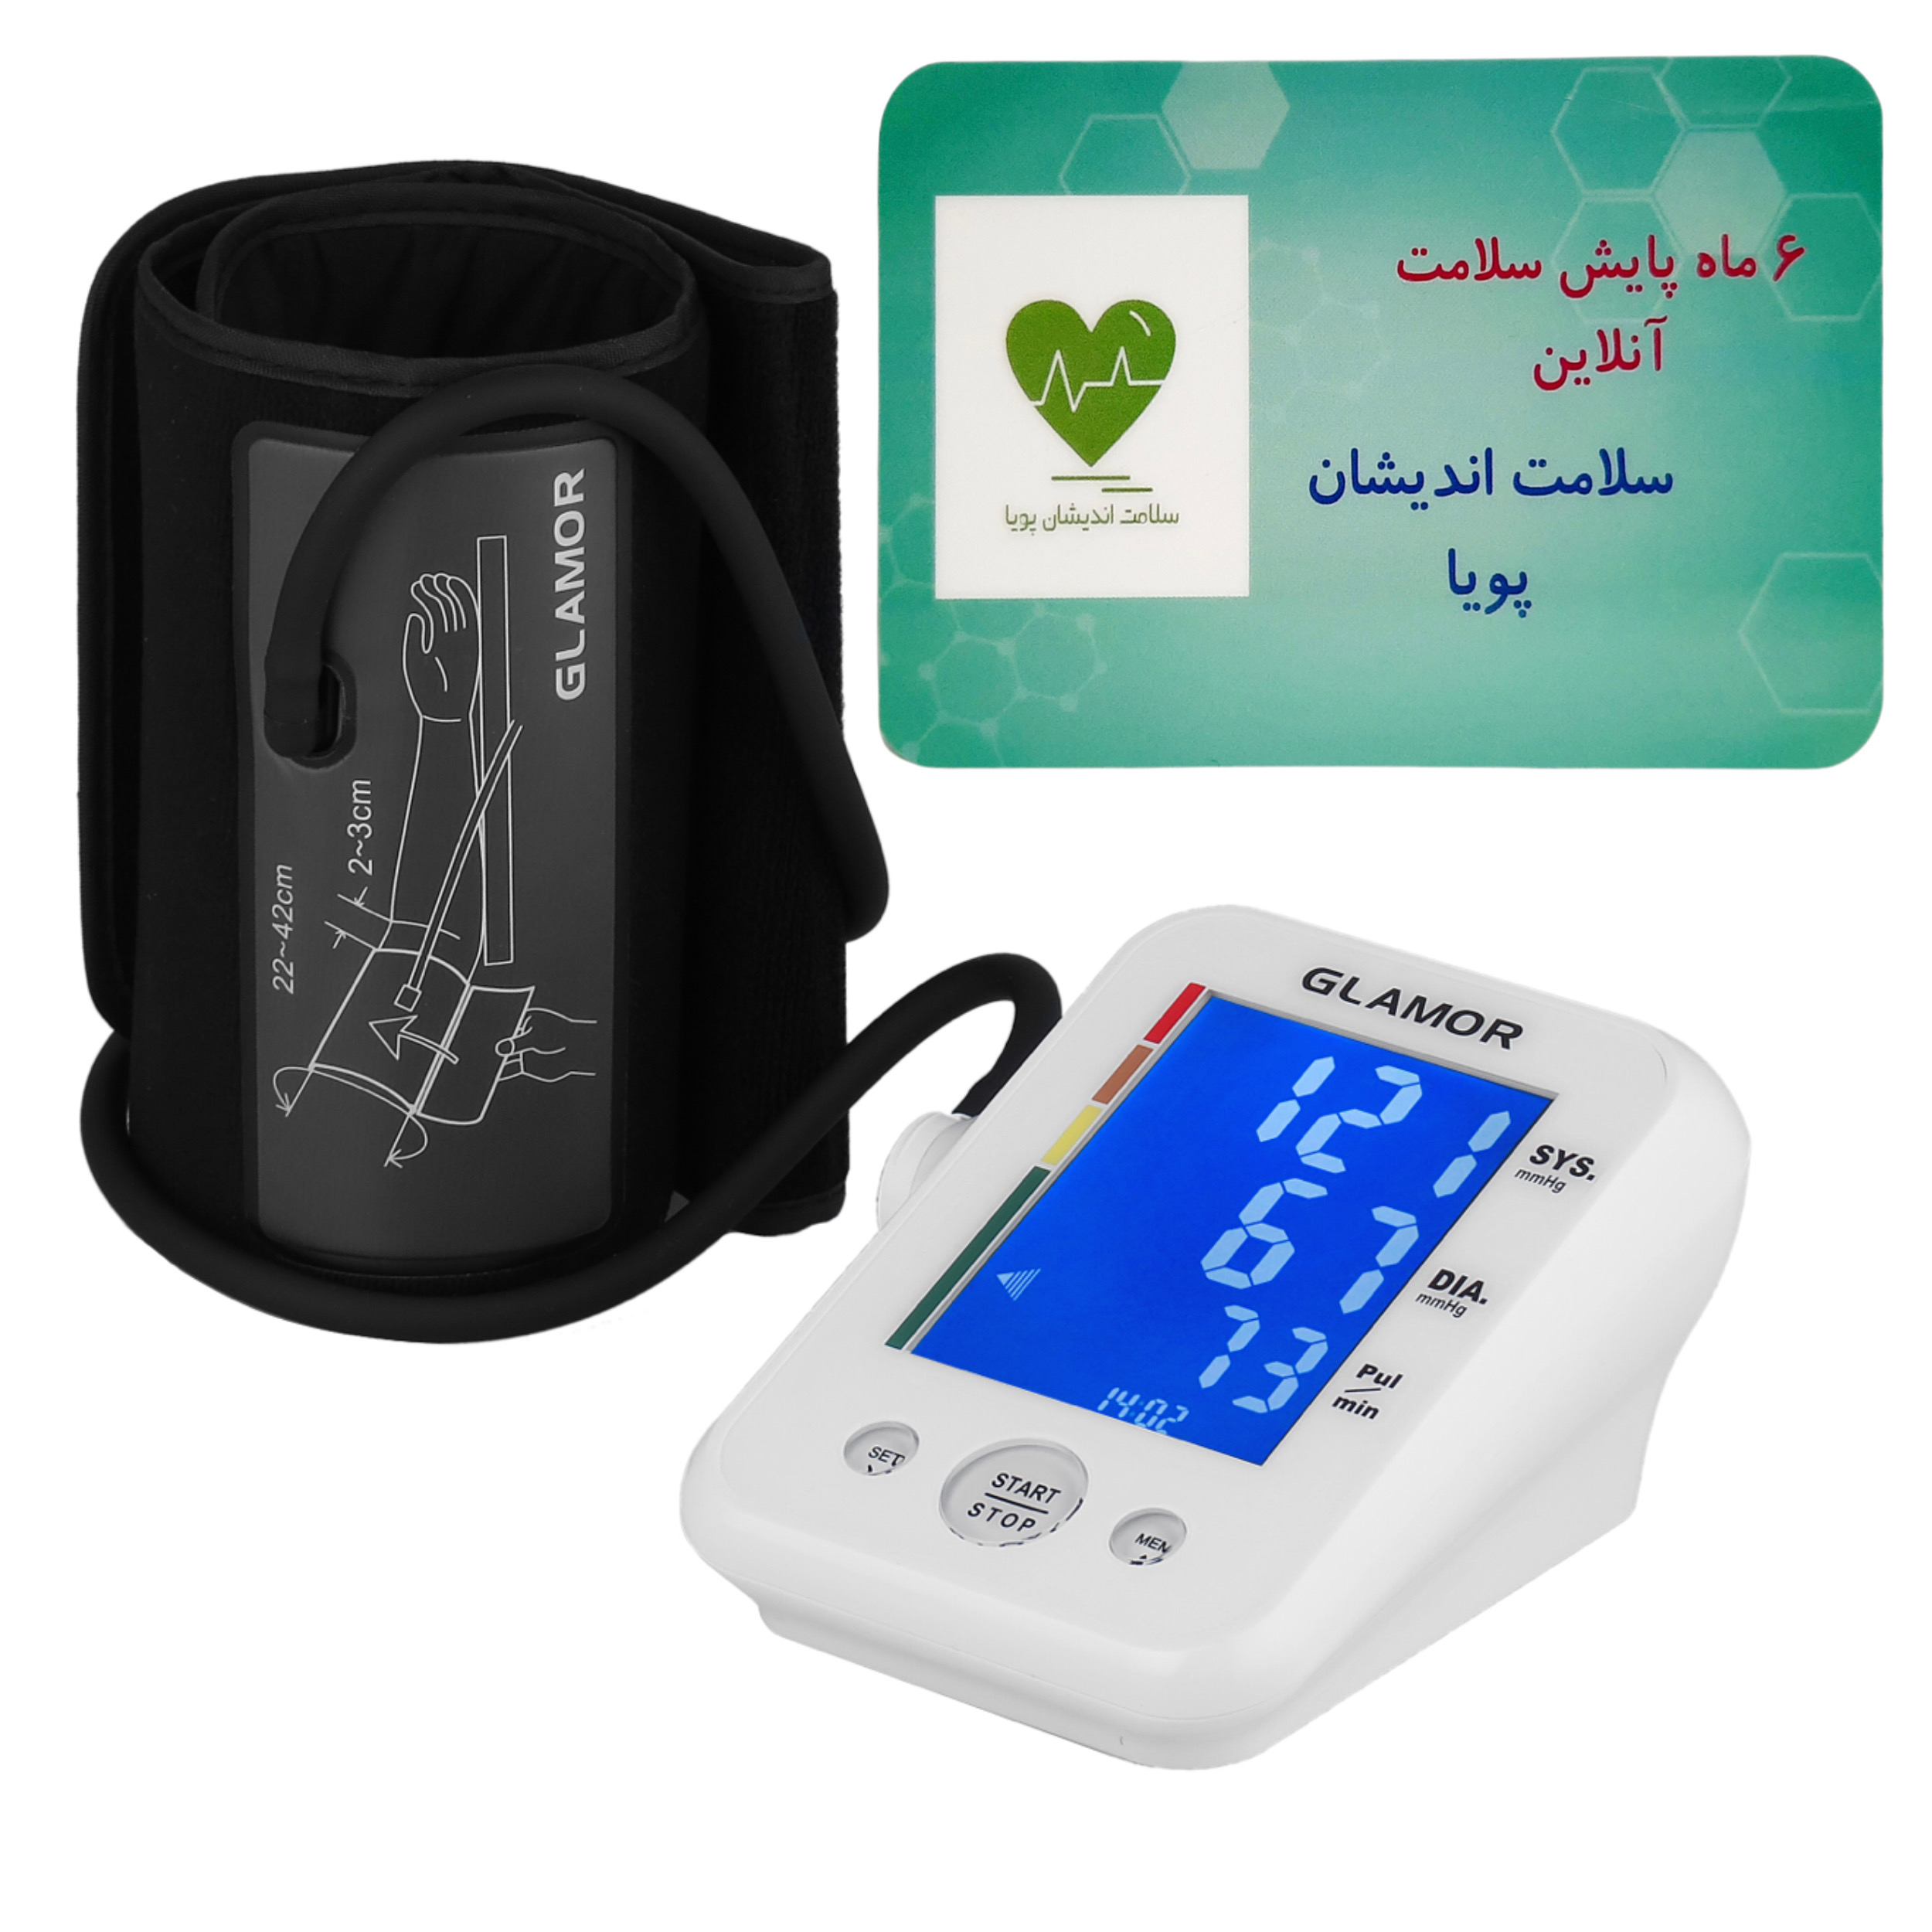 فشارسنج دیجیتال گلامور مدل TMB-995 به همراه کارت اشتراک 6 ماهه پایش سلامت آنلاین